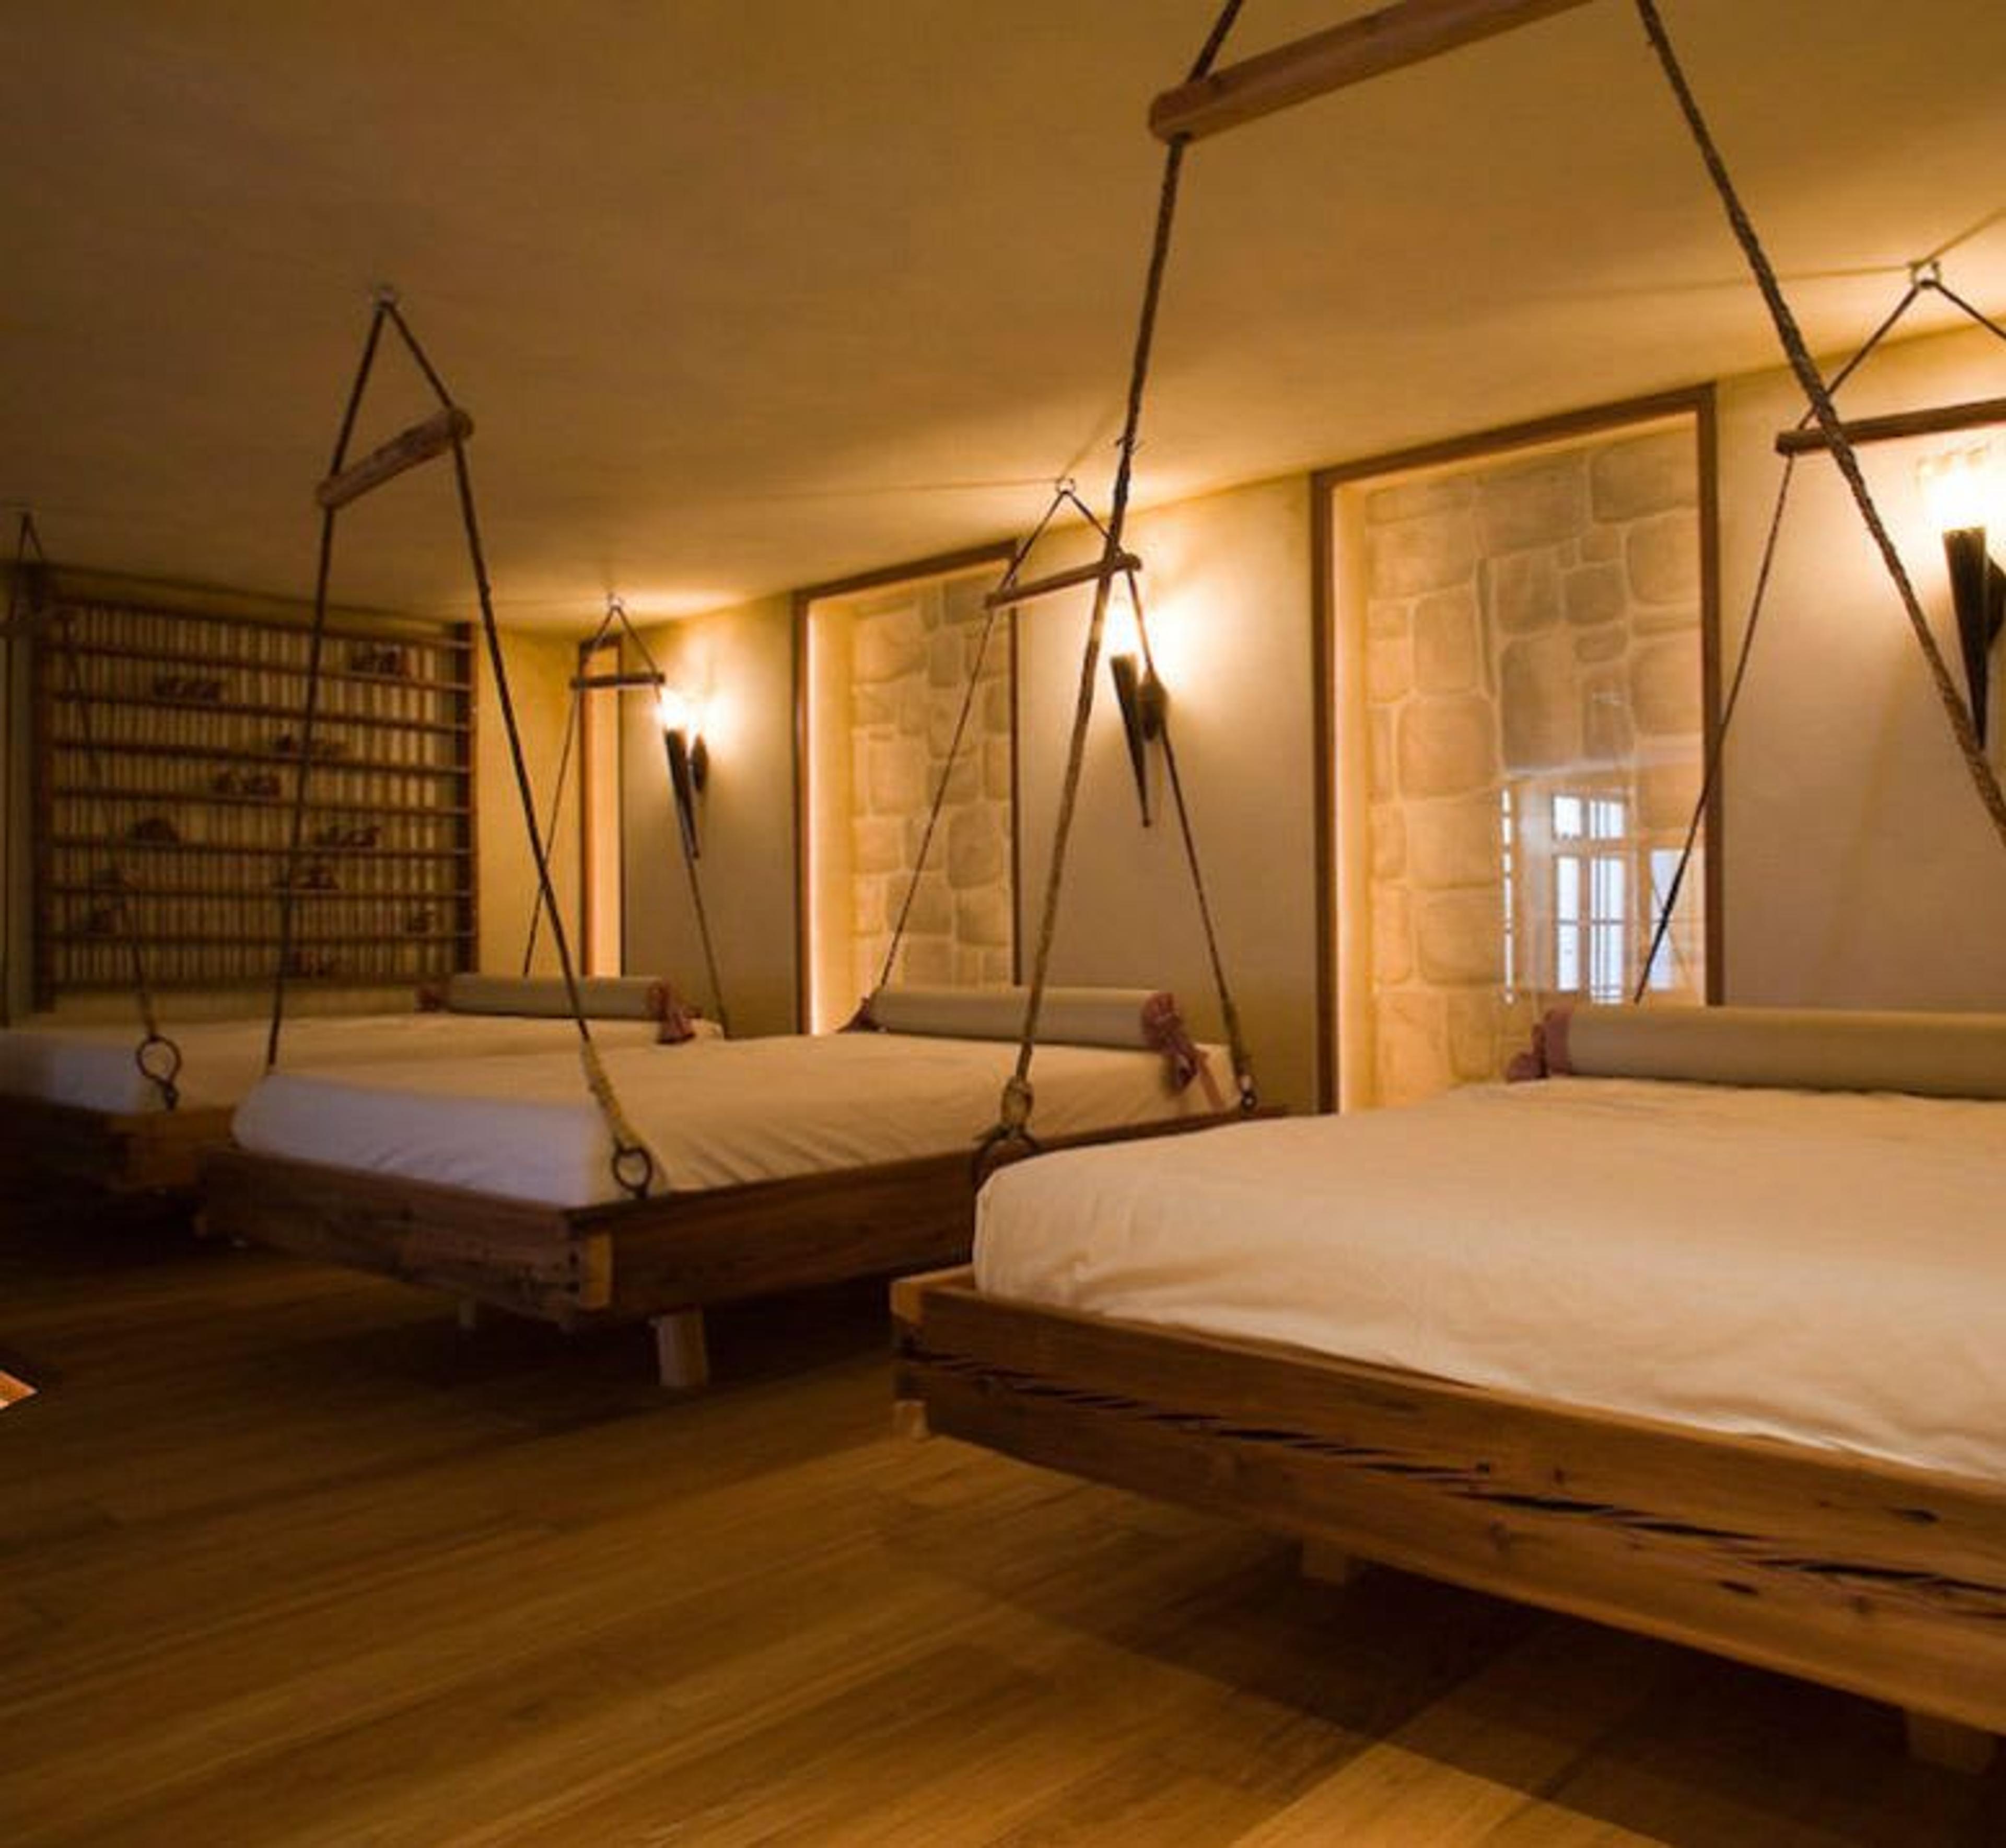 Sala de relajación con camas suspendidas y chimenea